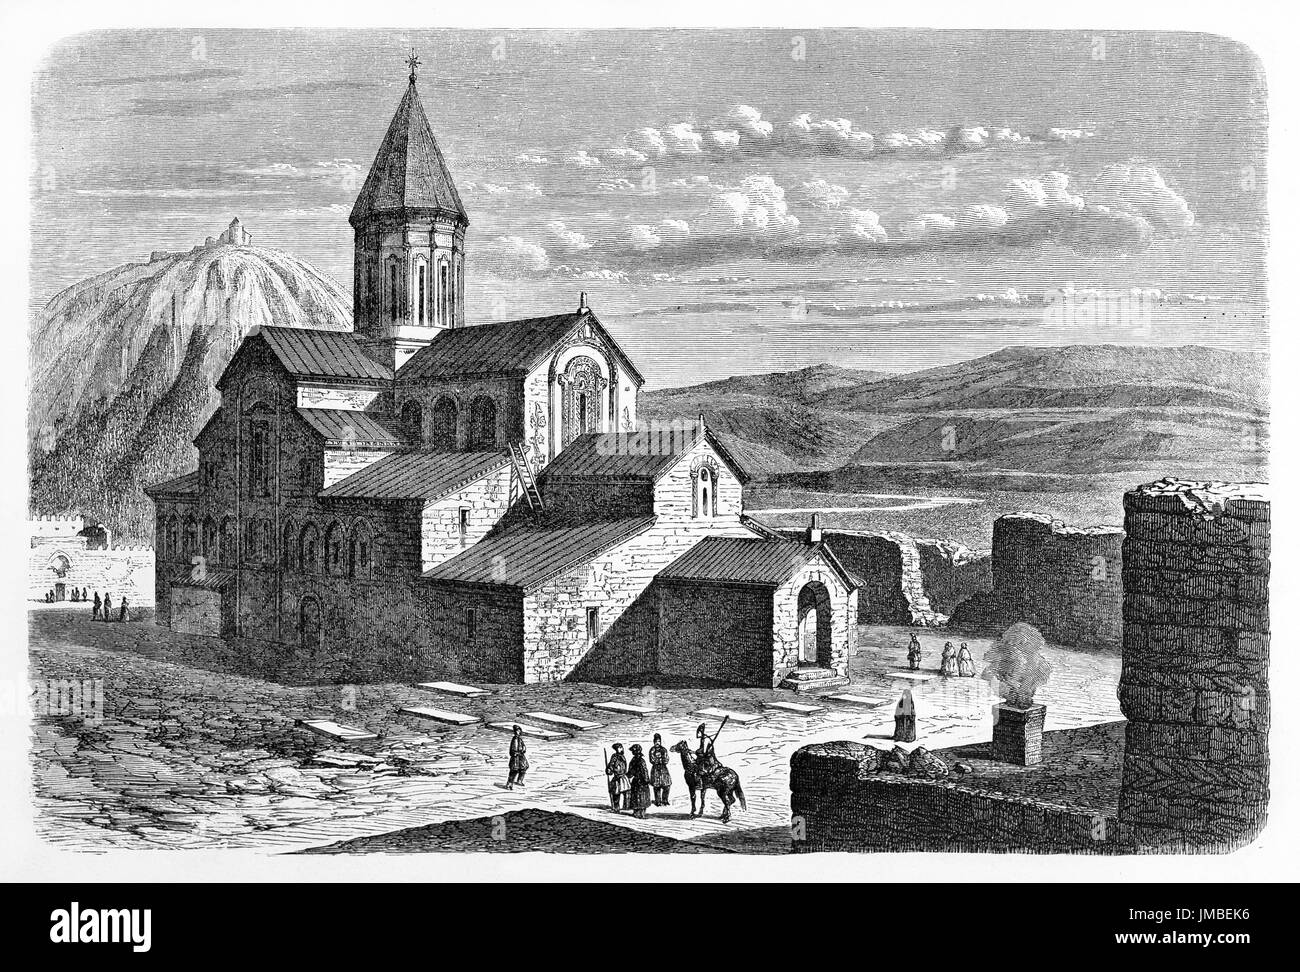 Édifice religieux médiéval en pierre avec des toits en pente sur un immense paysage, cathédrale Svetitskhoveli, Mtskheta, Géorgie. Gravure par Riou 1861 Banque D'Images